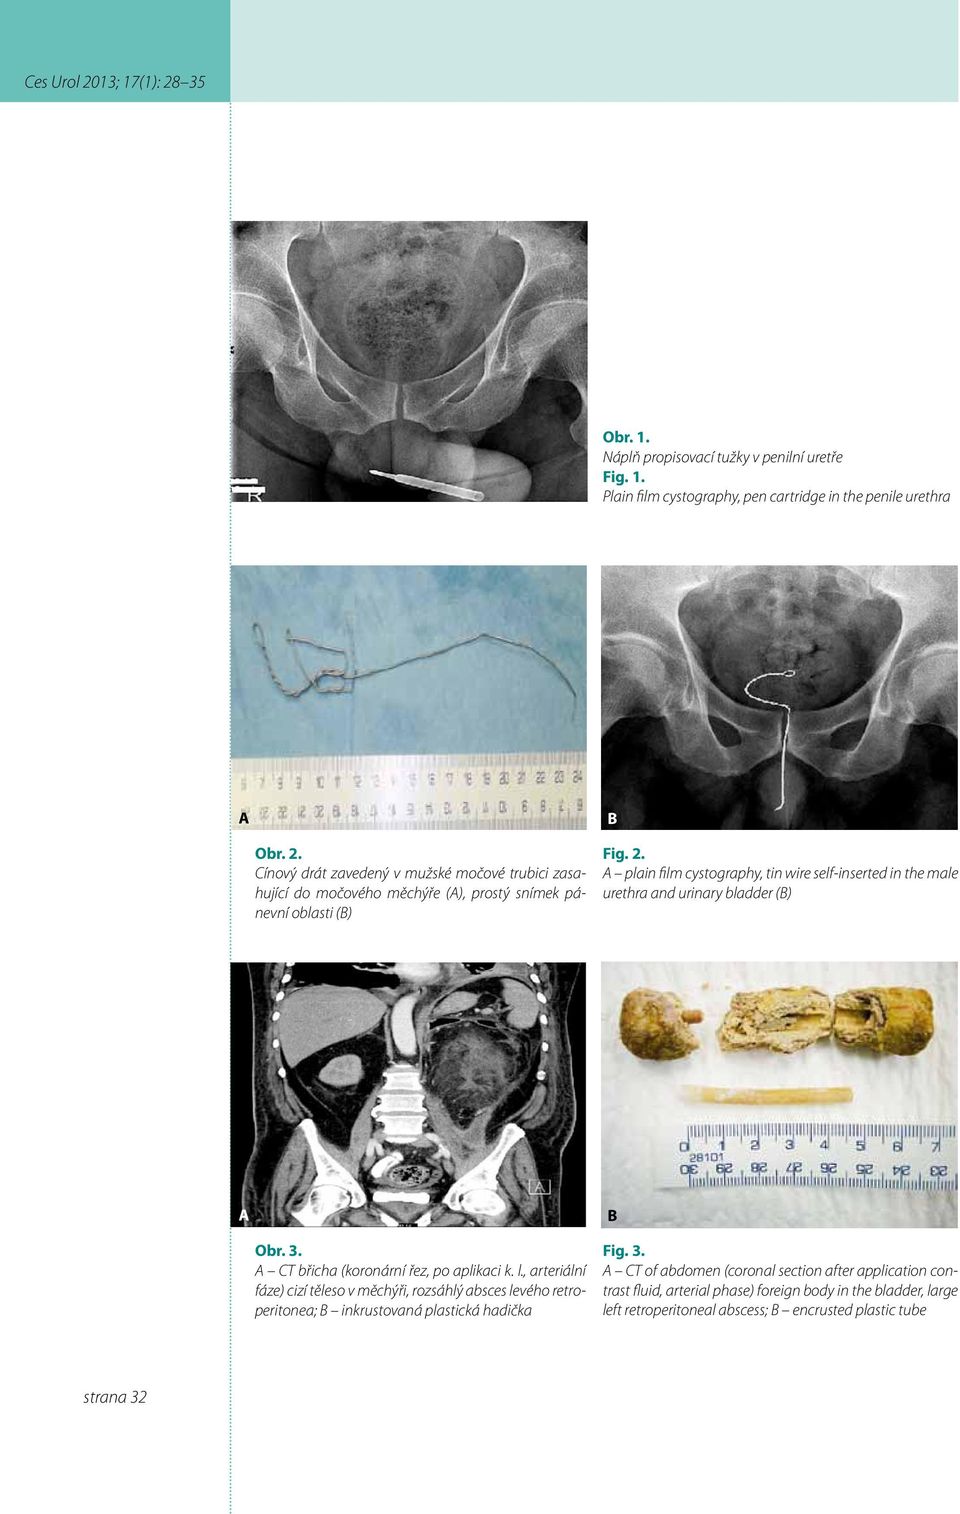 A plain film cystography, tin wire self-inserted in the male urethra and urinary bladder (B) A B Obr. 3. A CT břicha (koronární řez, po aplikaci k. l.